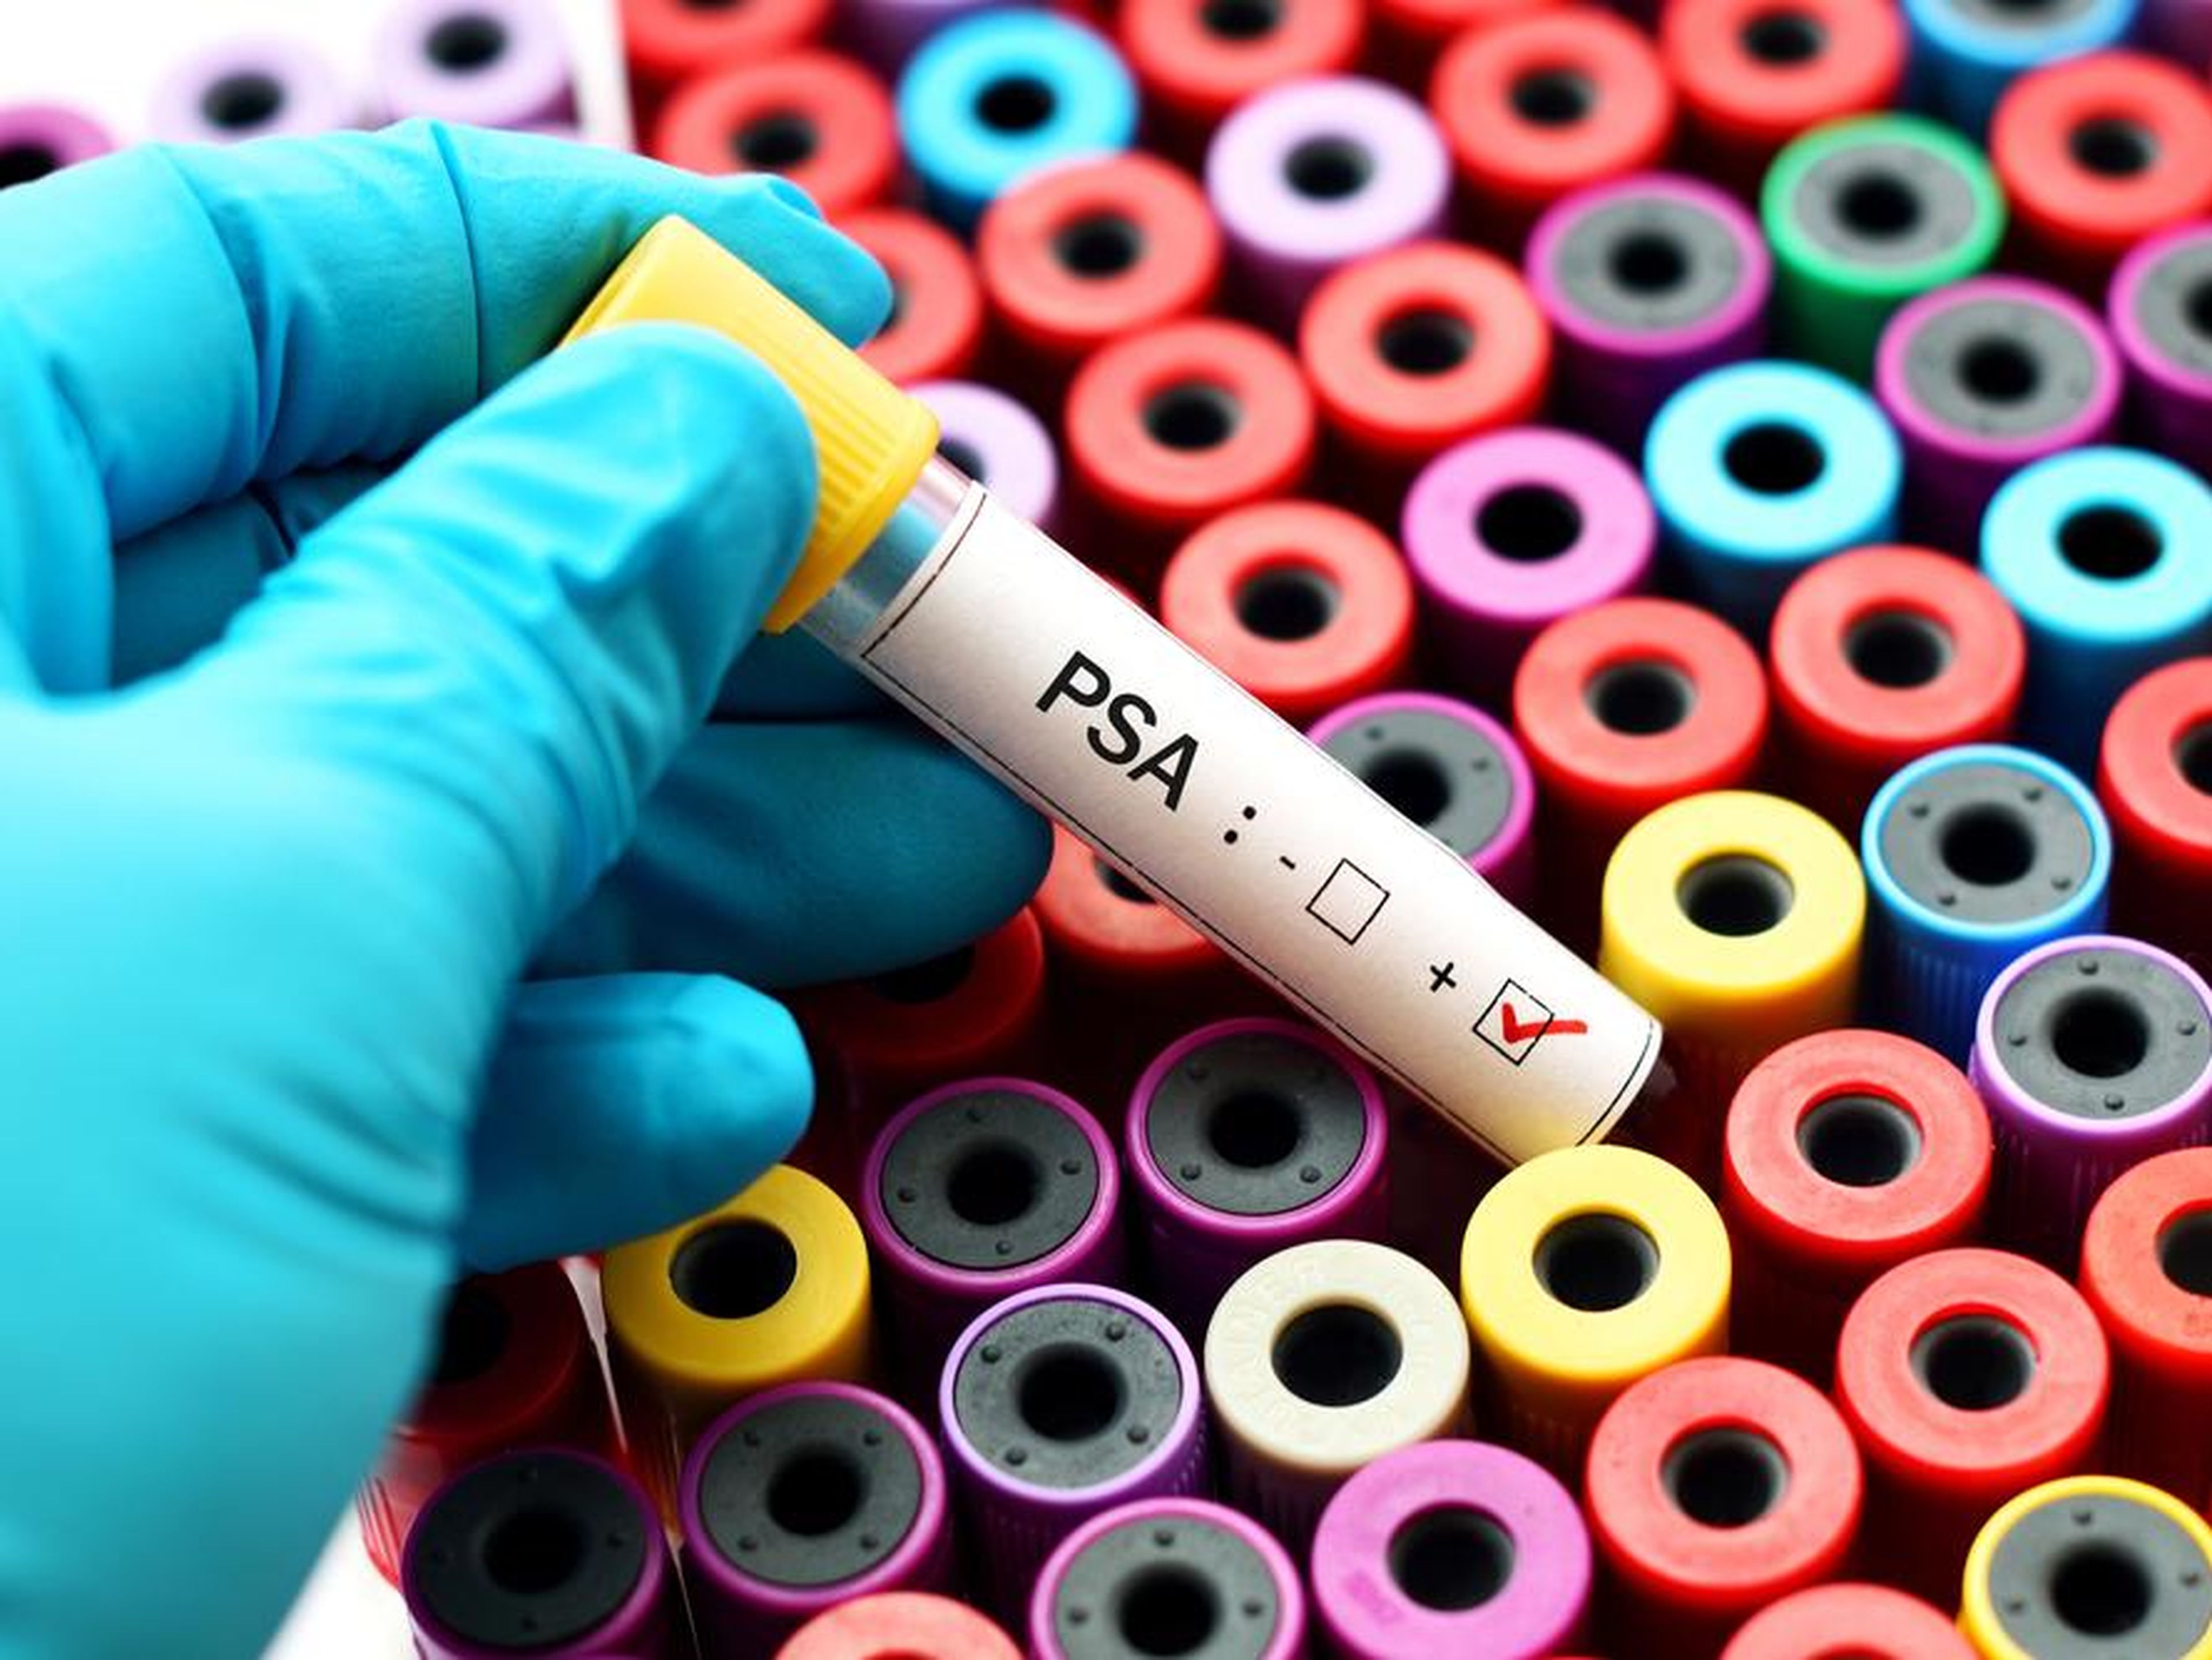 Una prueba de PSA (antígeno prostático específico) puede detectar el cáncer de próstata.